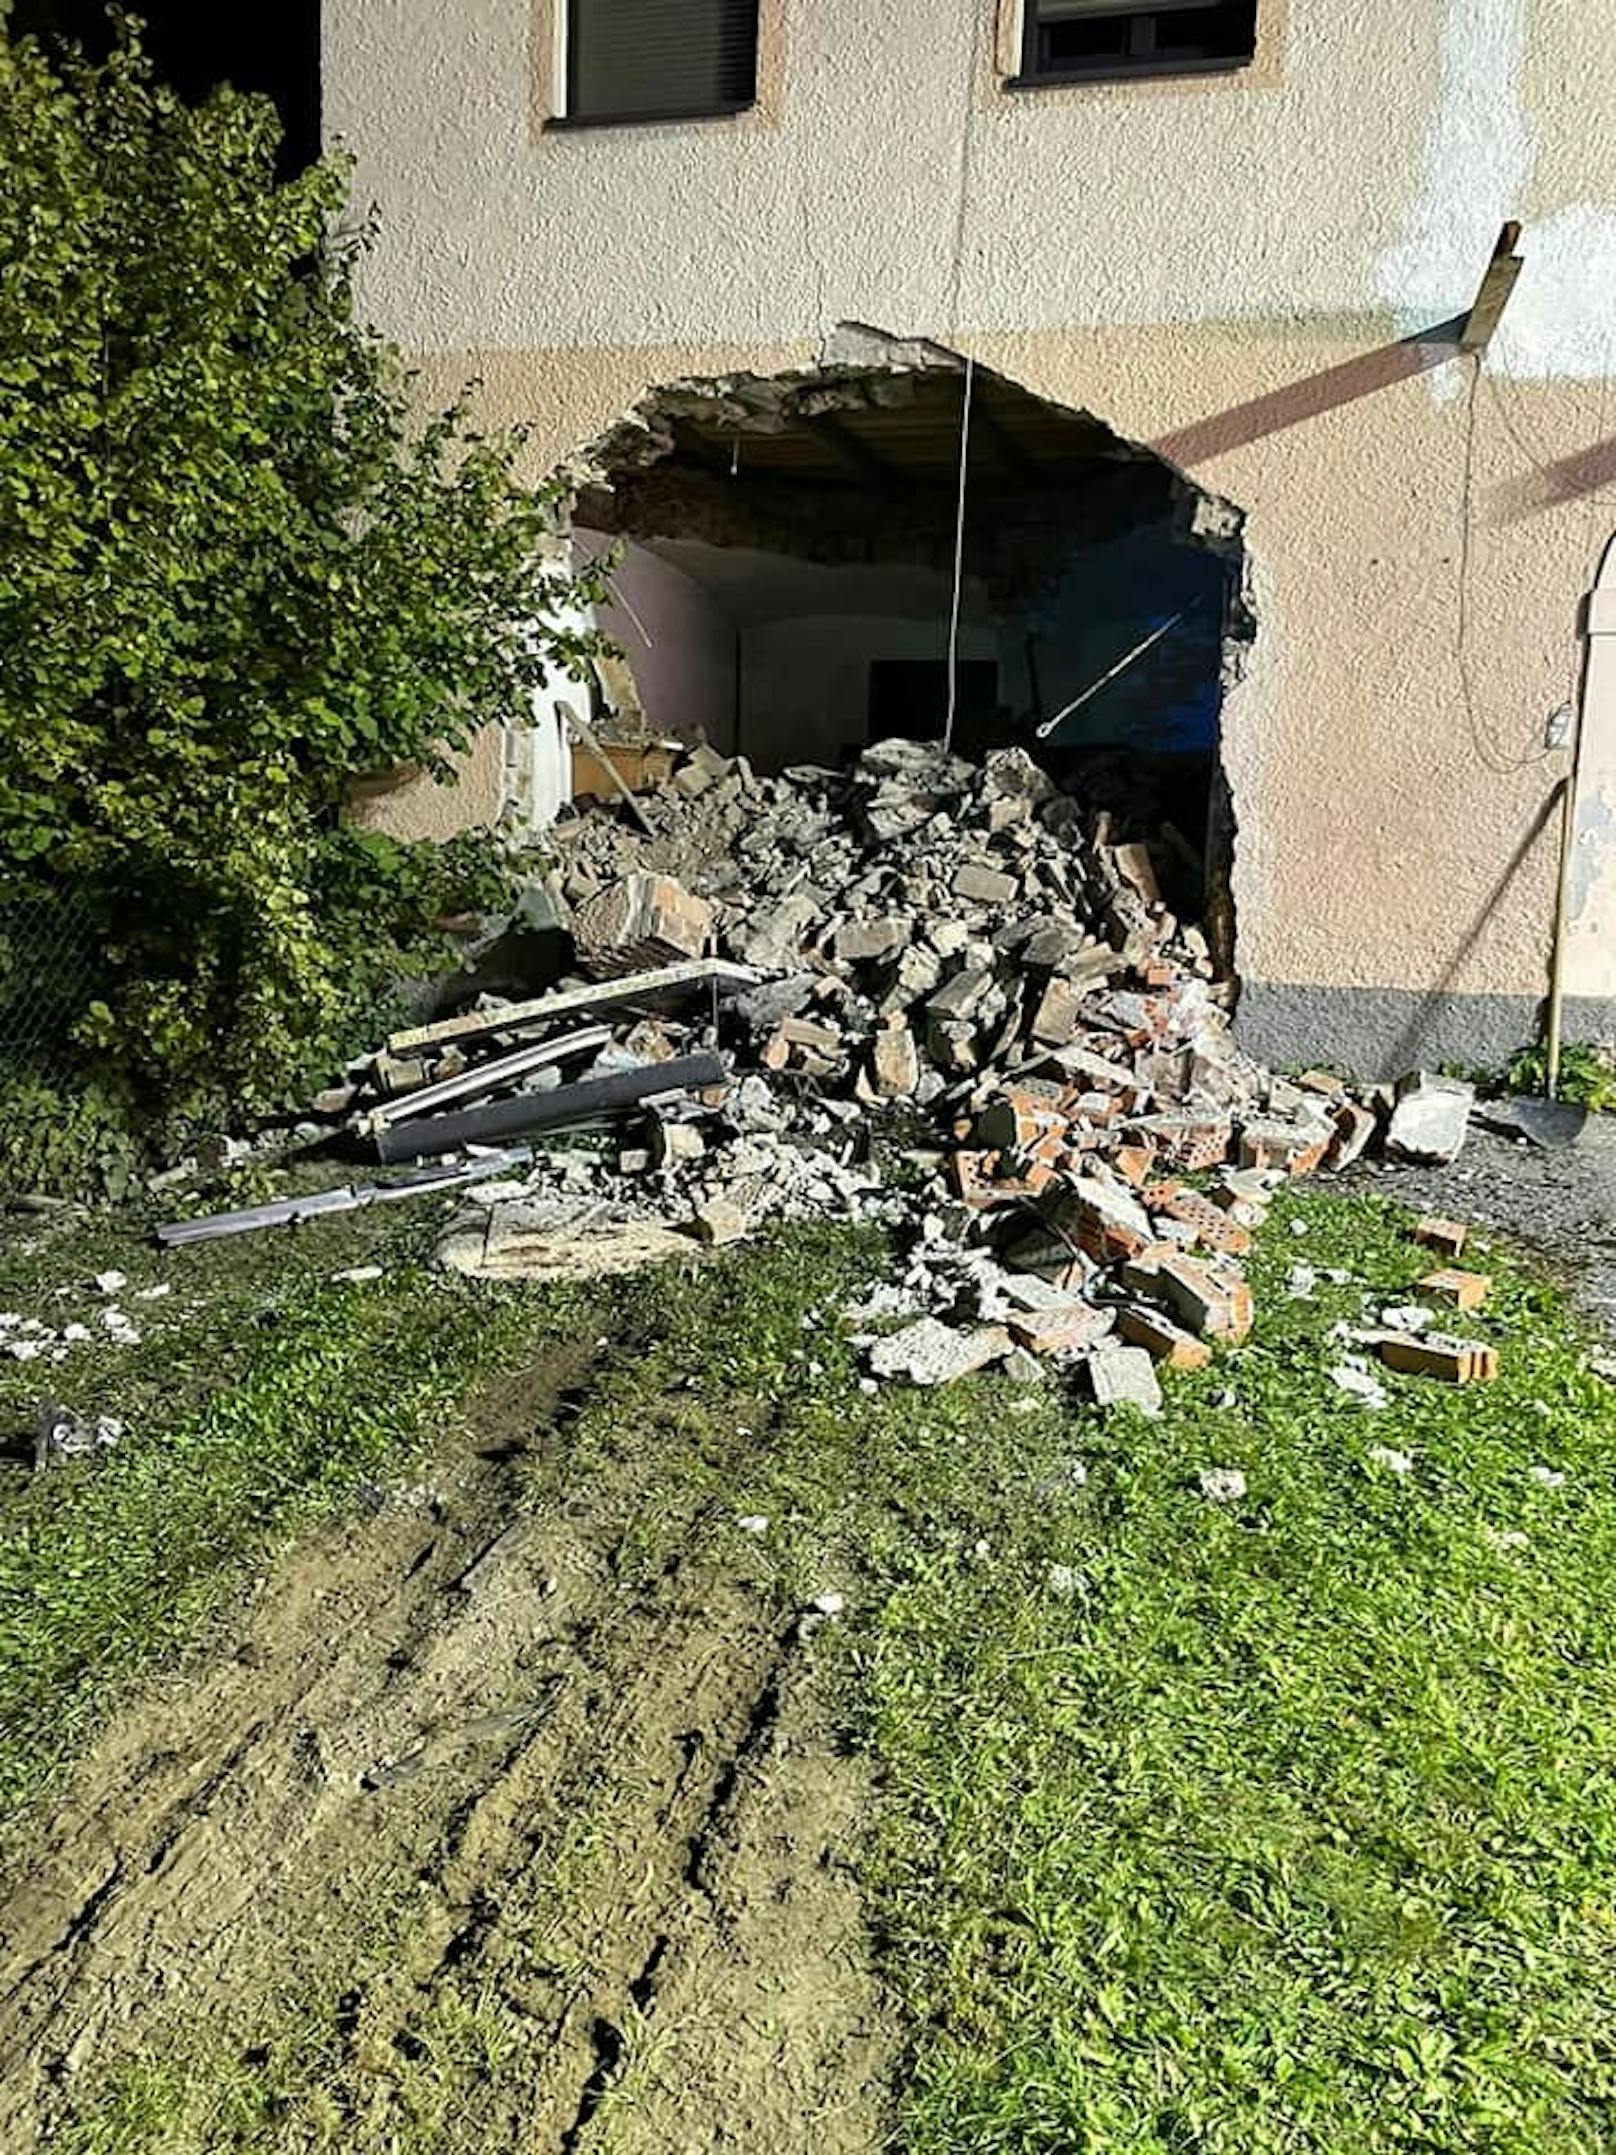 Spektakulärer Unfall in Rosegg! Ein 23-Jähriger donnerte gegen Mitternacht mit seinem BMW in ein Haus und riss dabei ein riesiges Loch in die Mauer.